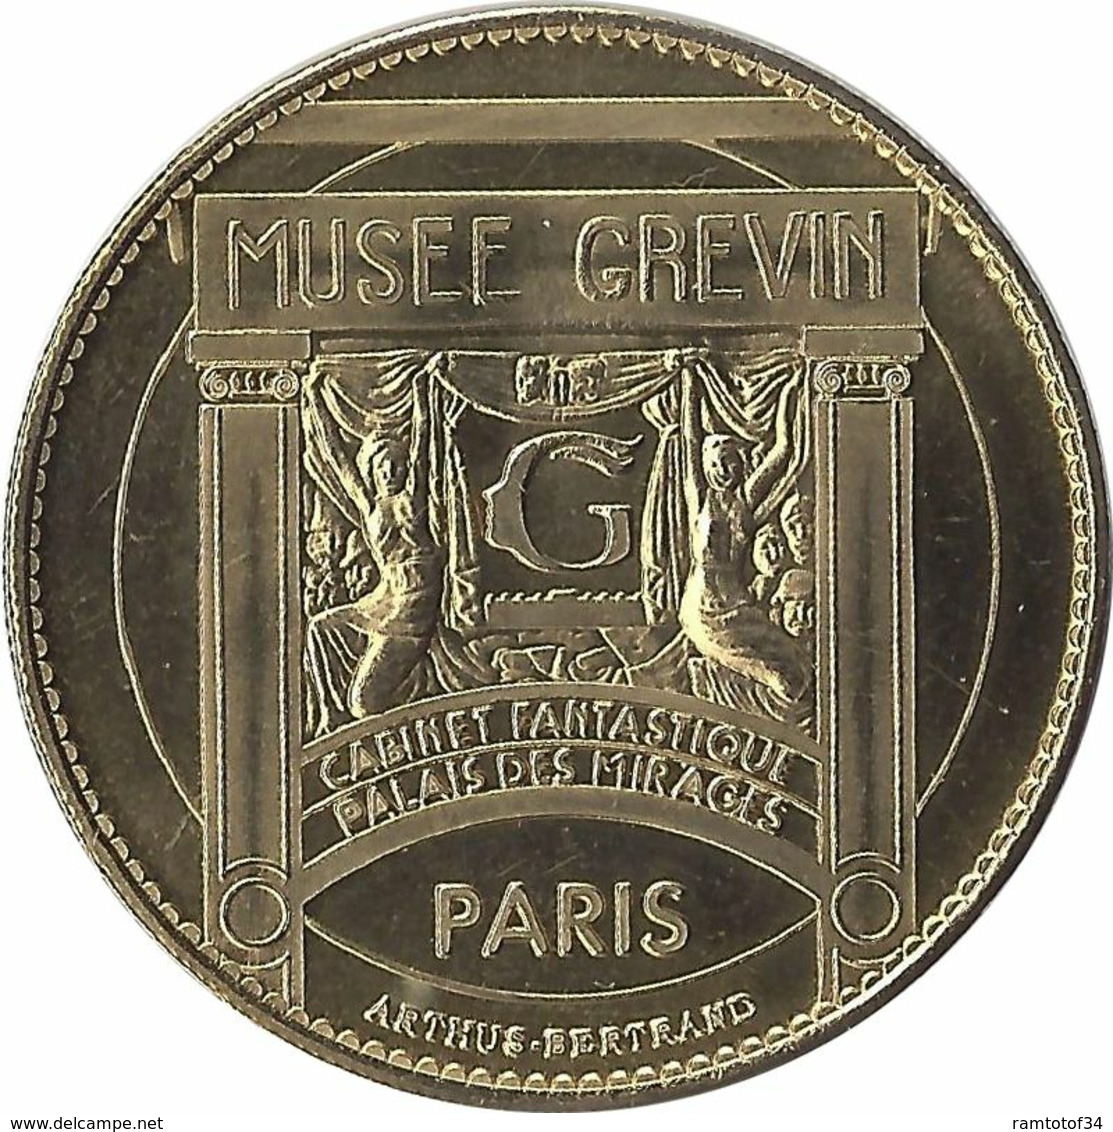 2009 AB157 - PARIS - Musée Grévin 7 (Michael Jackson) / ARTHUS BERTRAND 2009 - 2009